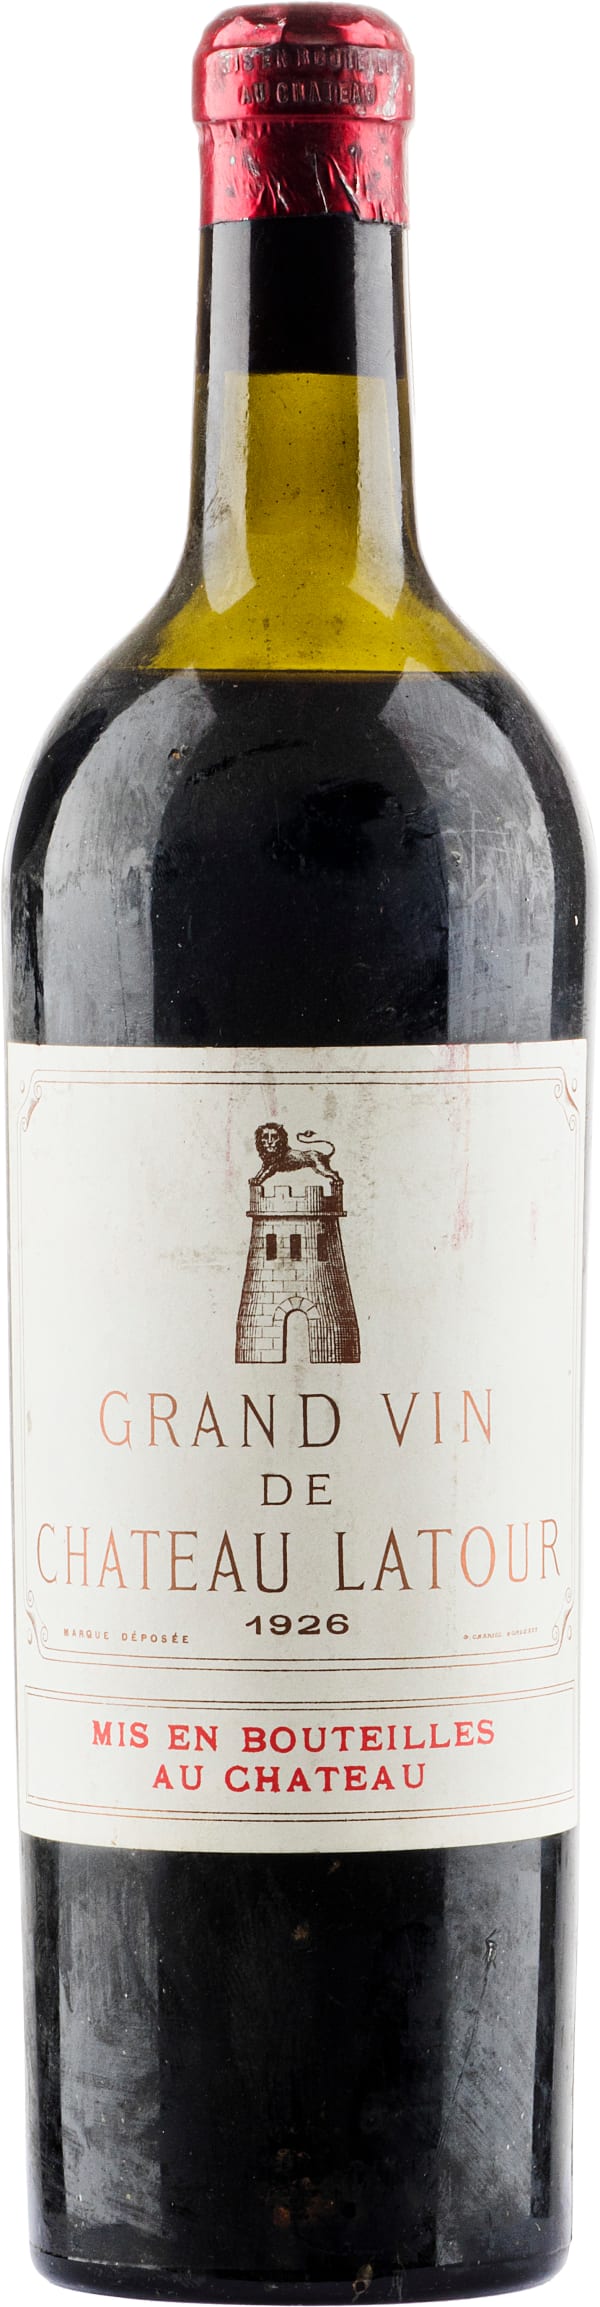 Grand Vin de Château Latour 1926